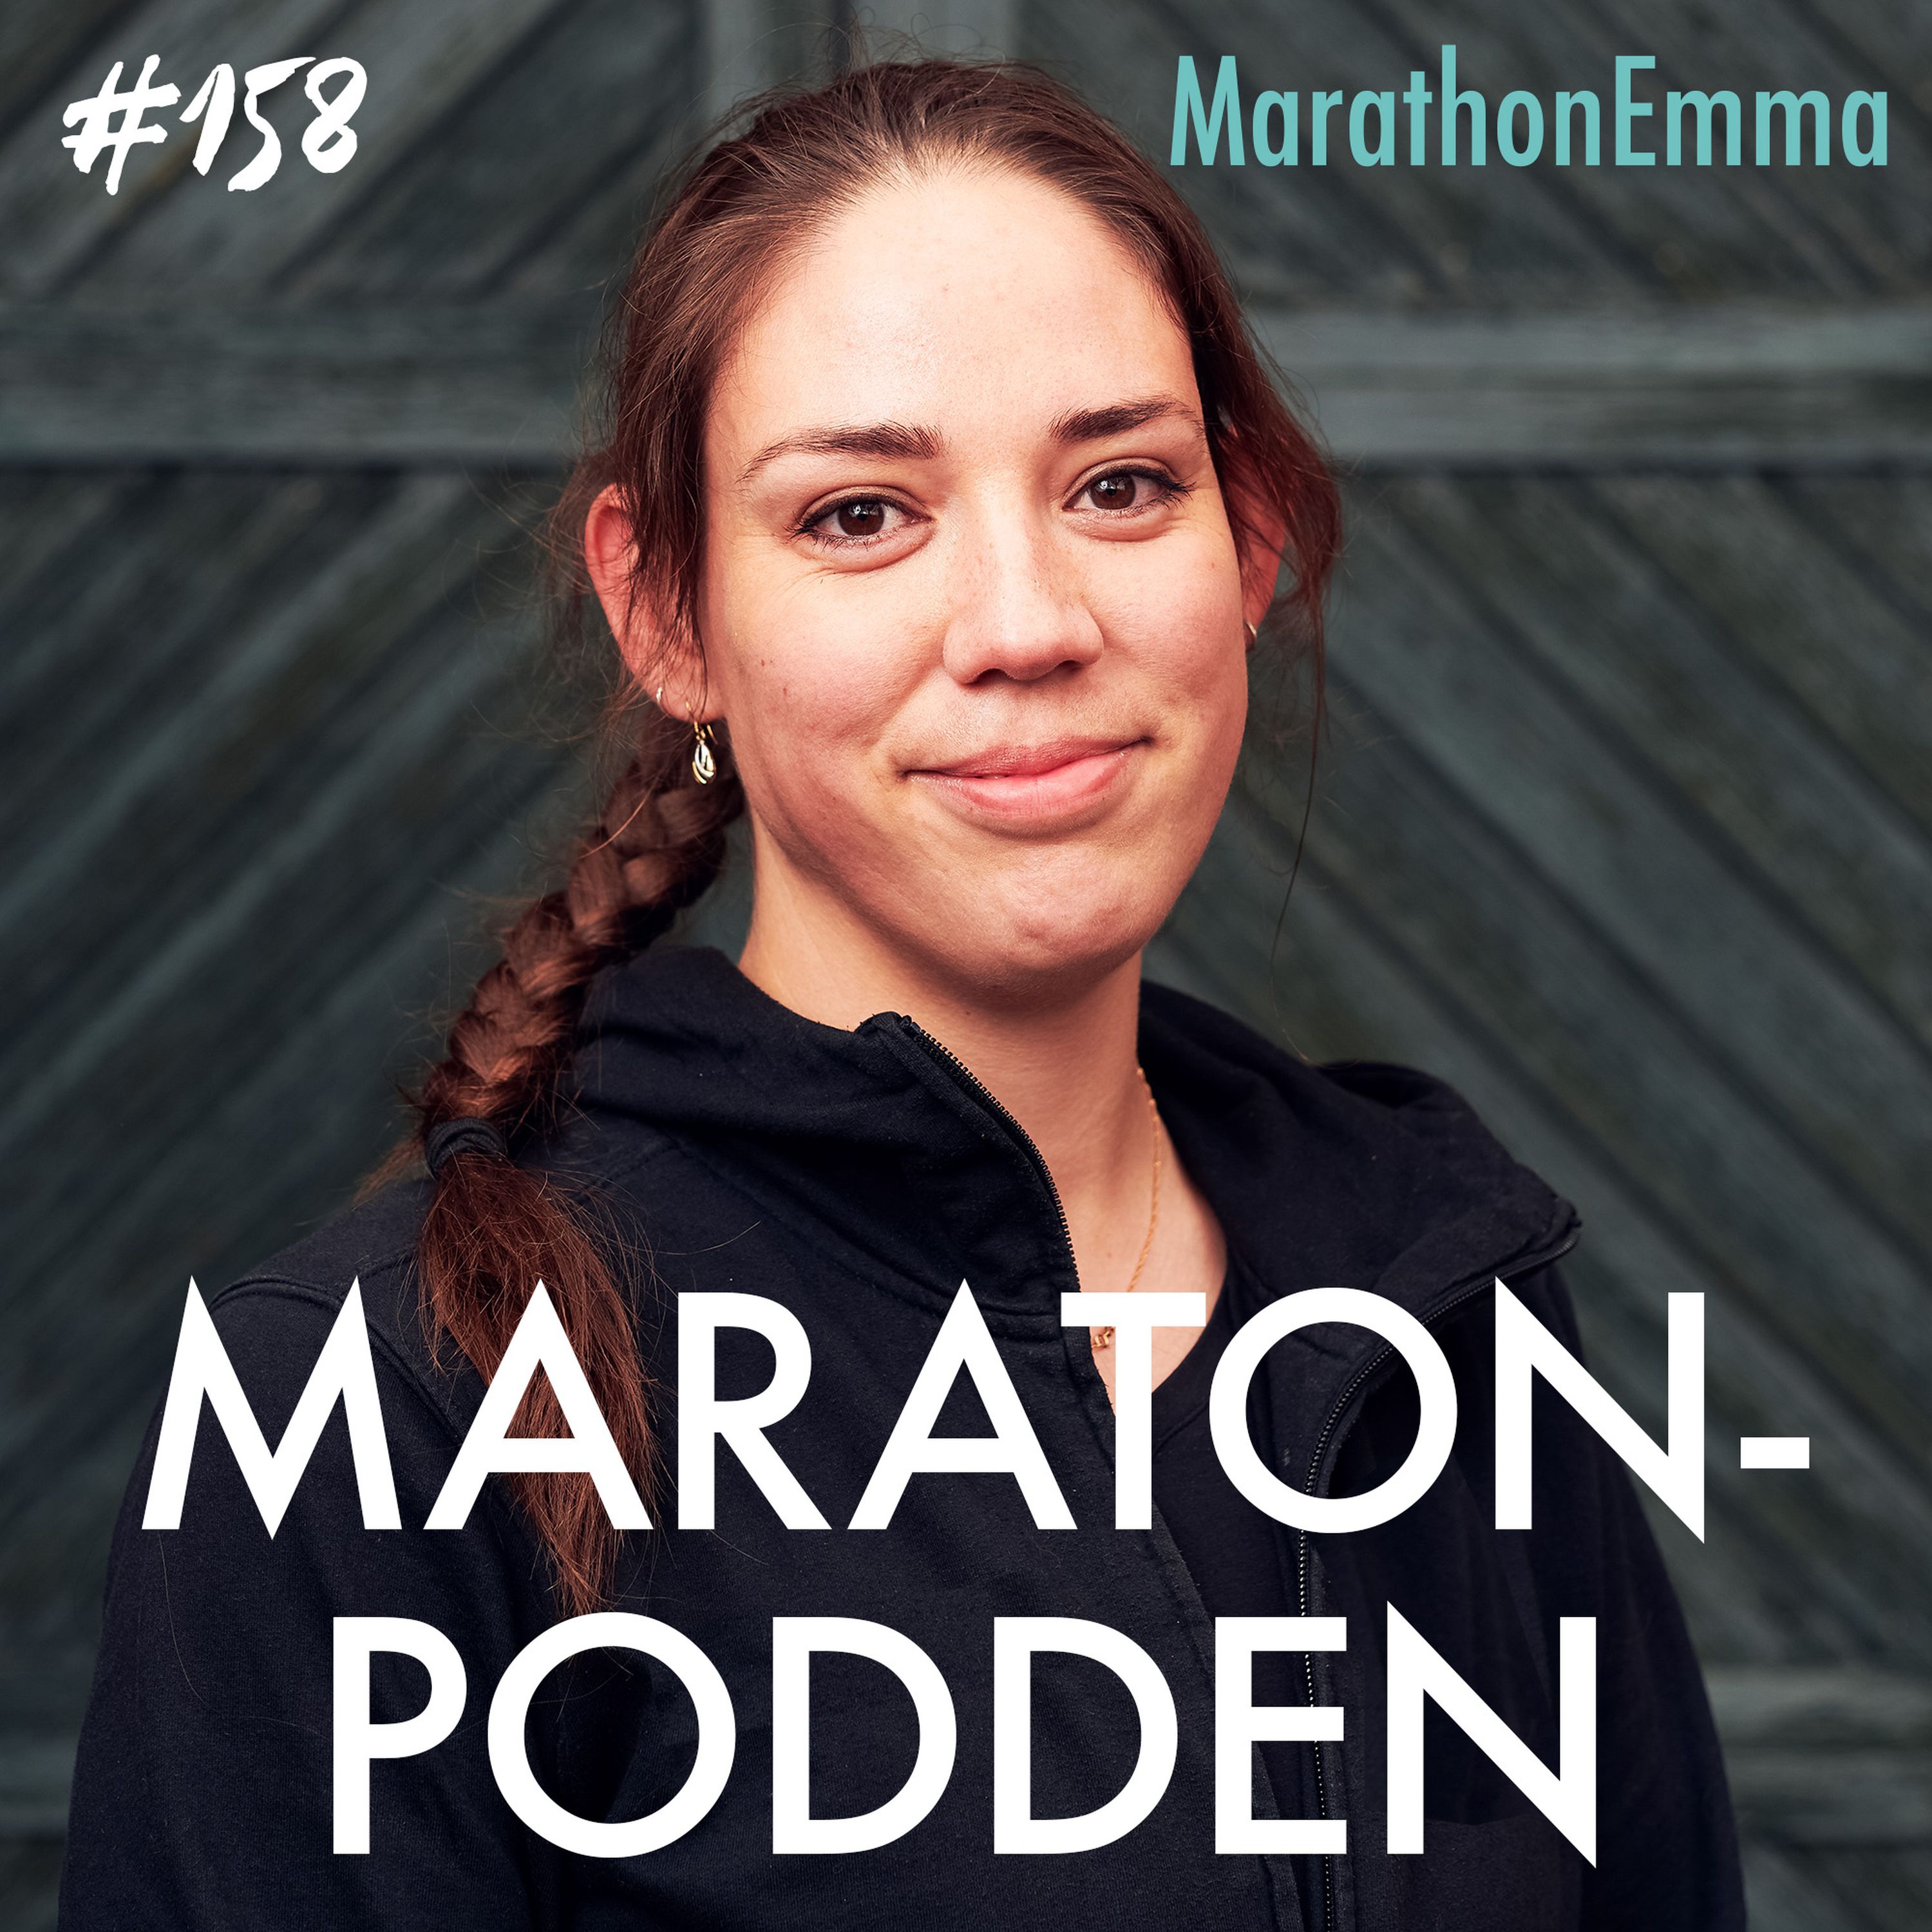 #158: MarathonEmma, ville ta sitt liv – löpningen räddade henne